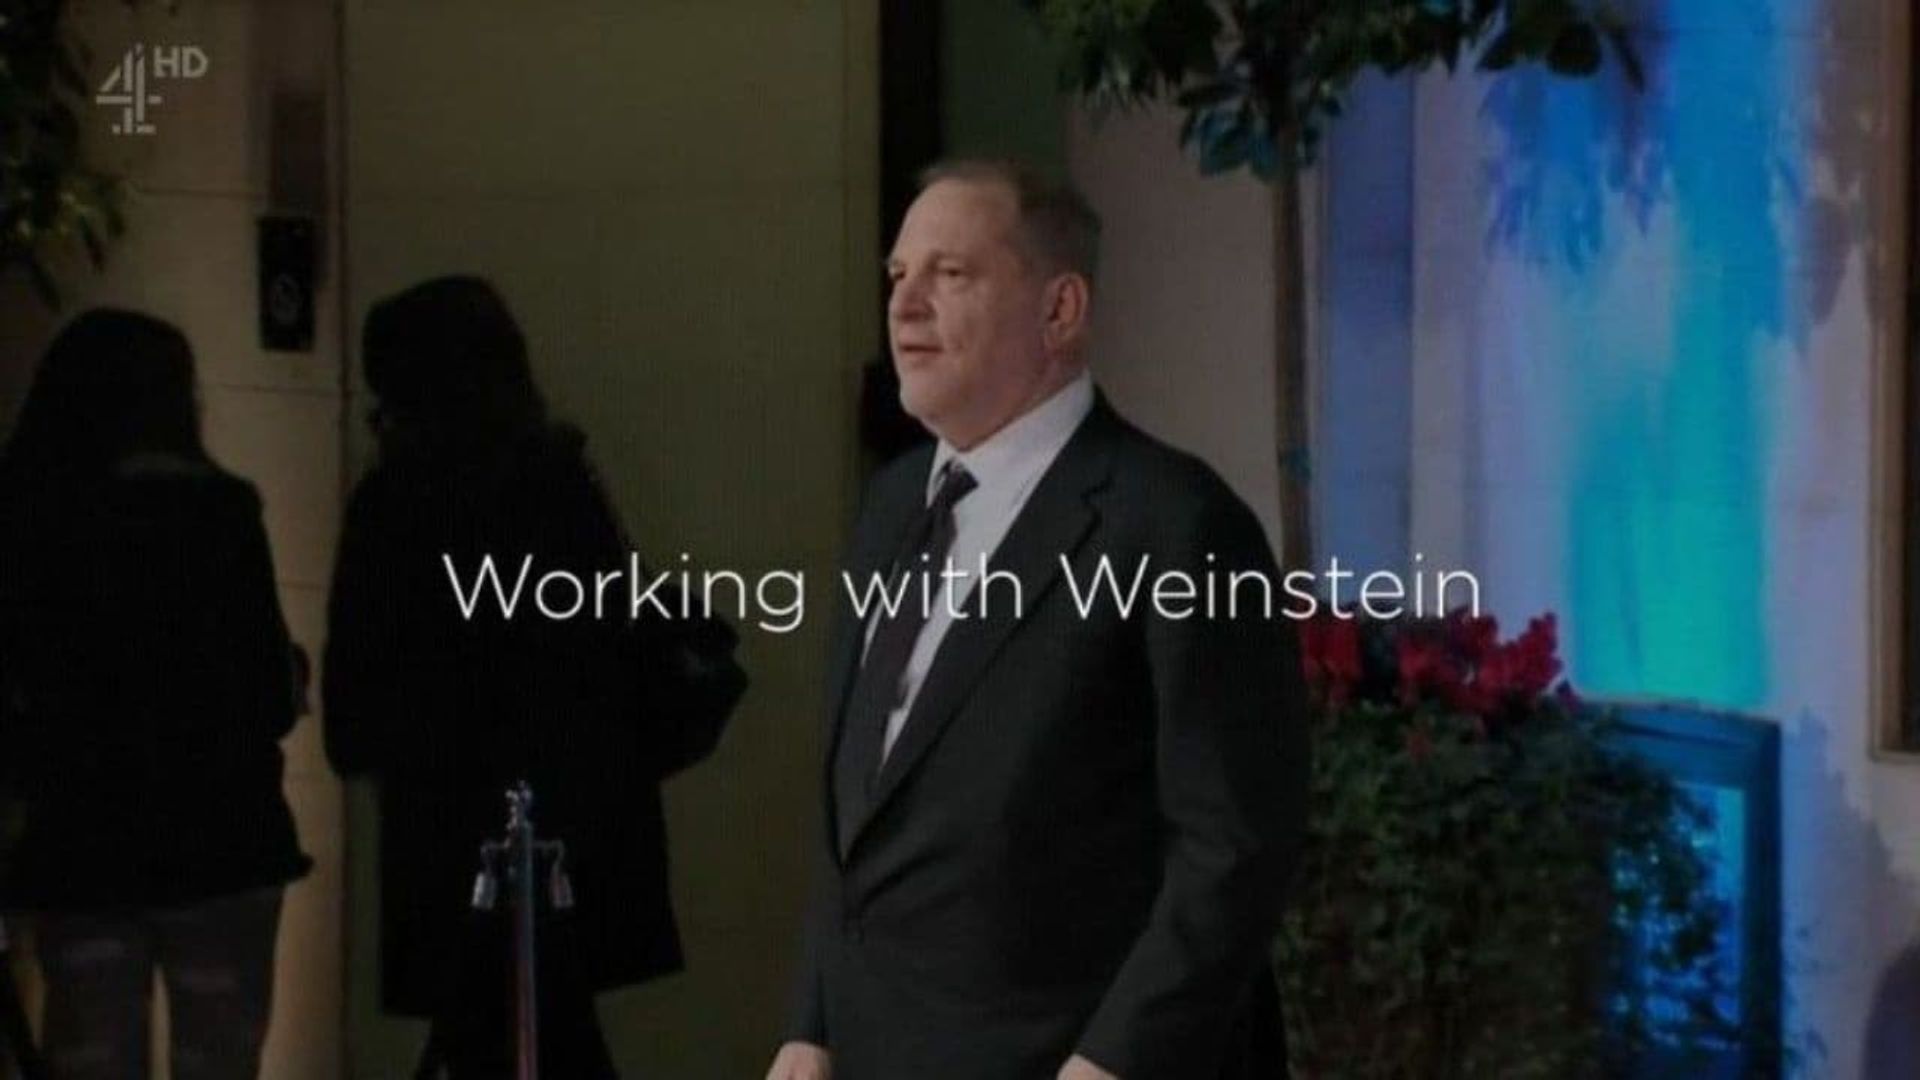 Working with Weinstein background